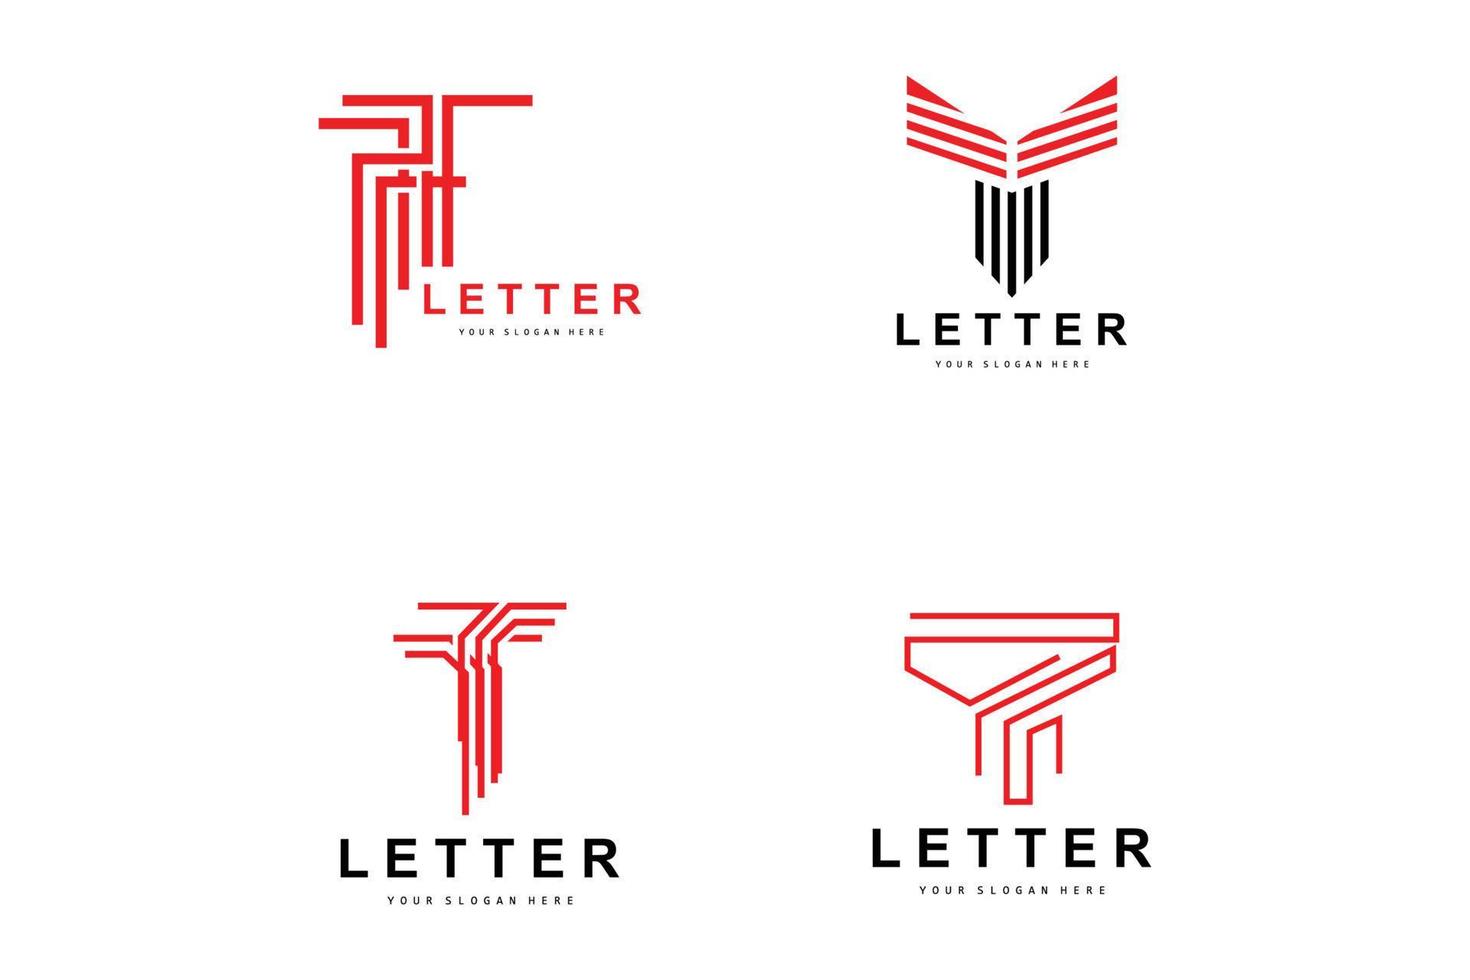 t-Buchstaben-Logo, Vektor im modernen Buchstabenstil, Design geeignet für Produktmarken mit t-Buchstaben